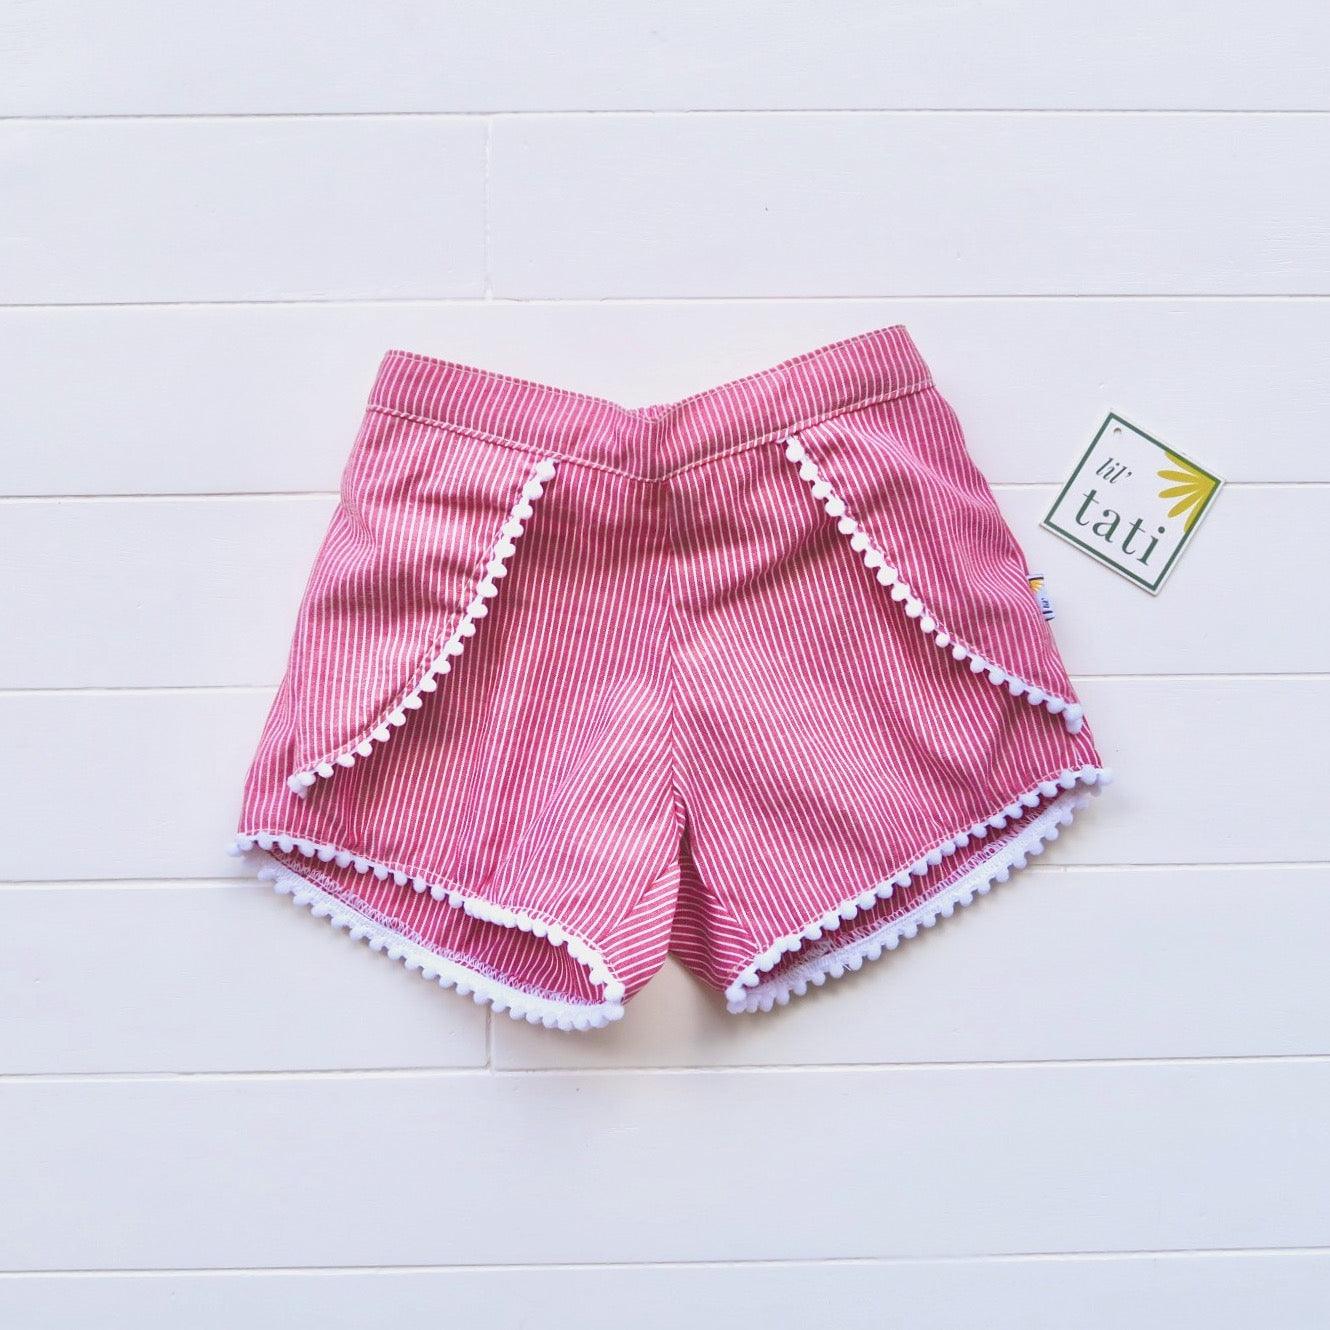 Pompom Shorts in Red Pinstripes - Lil' Tati